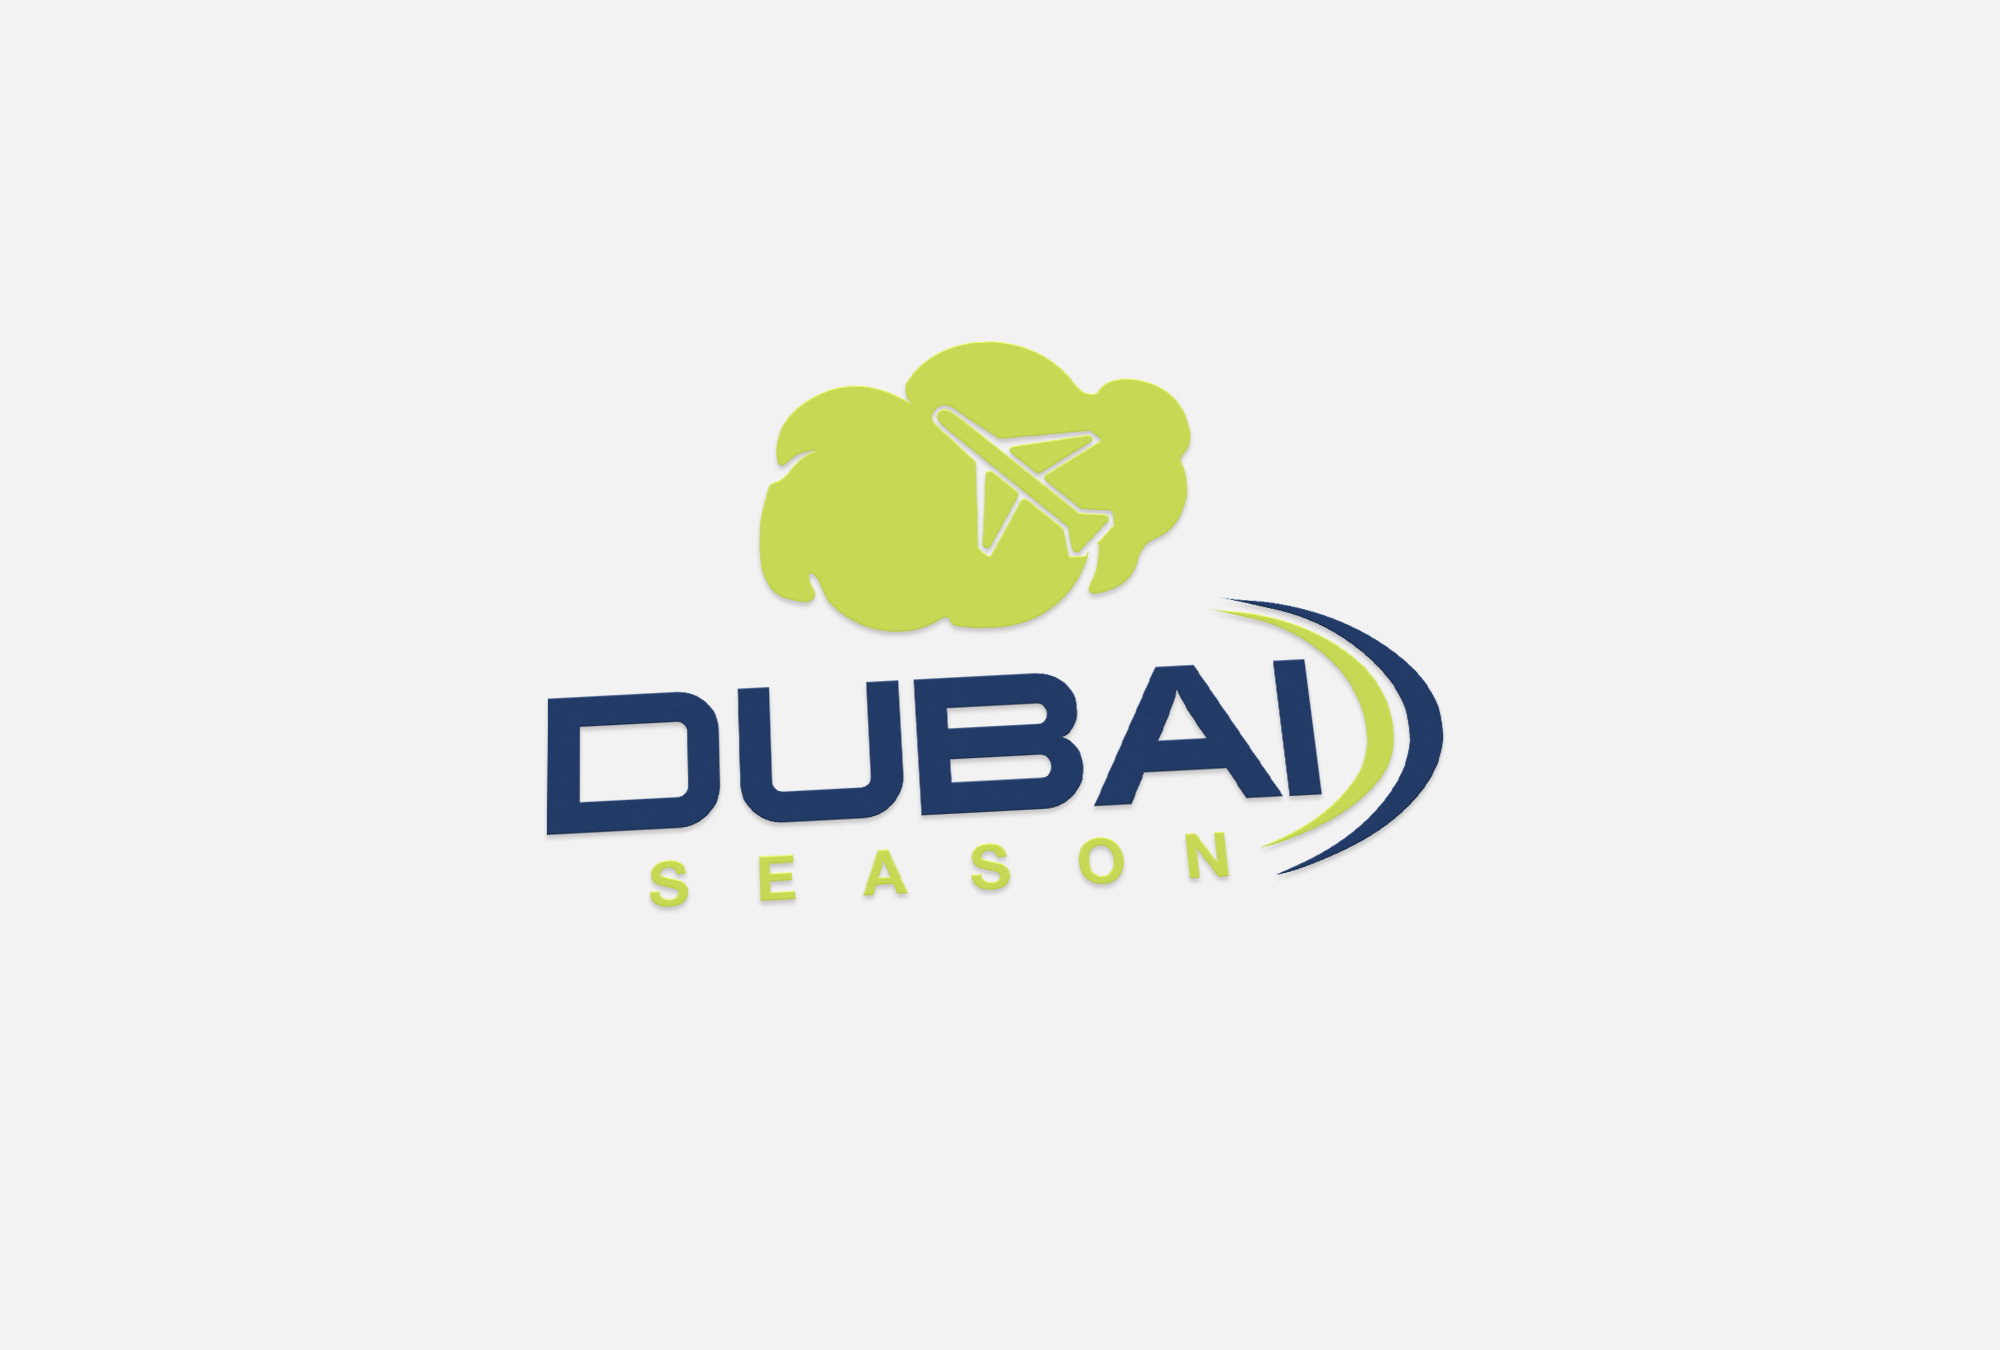 Dubai Season